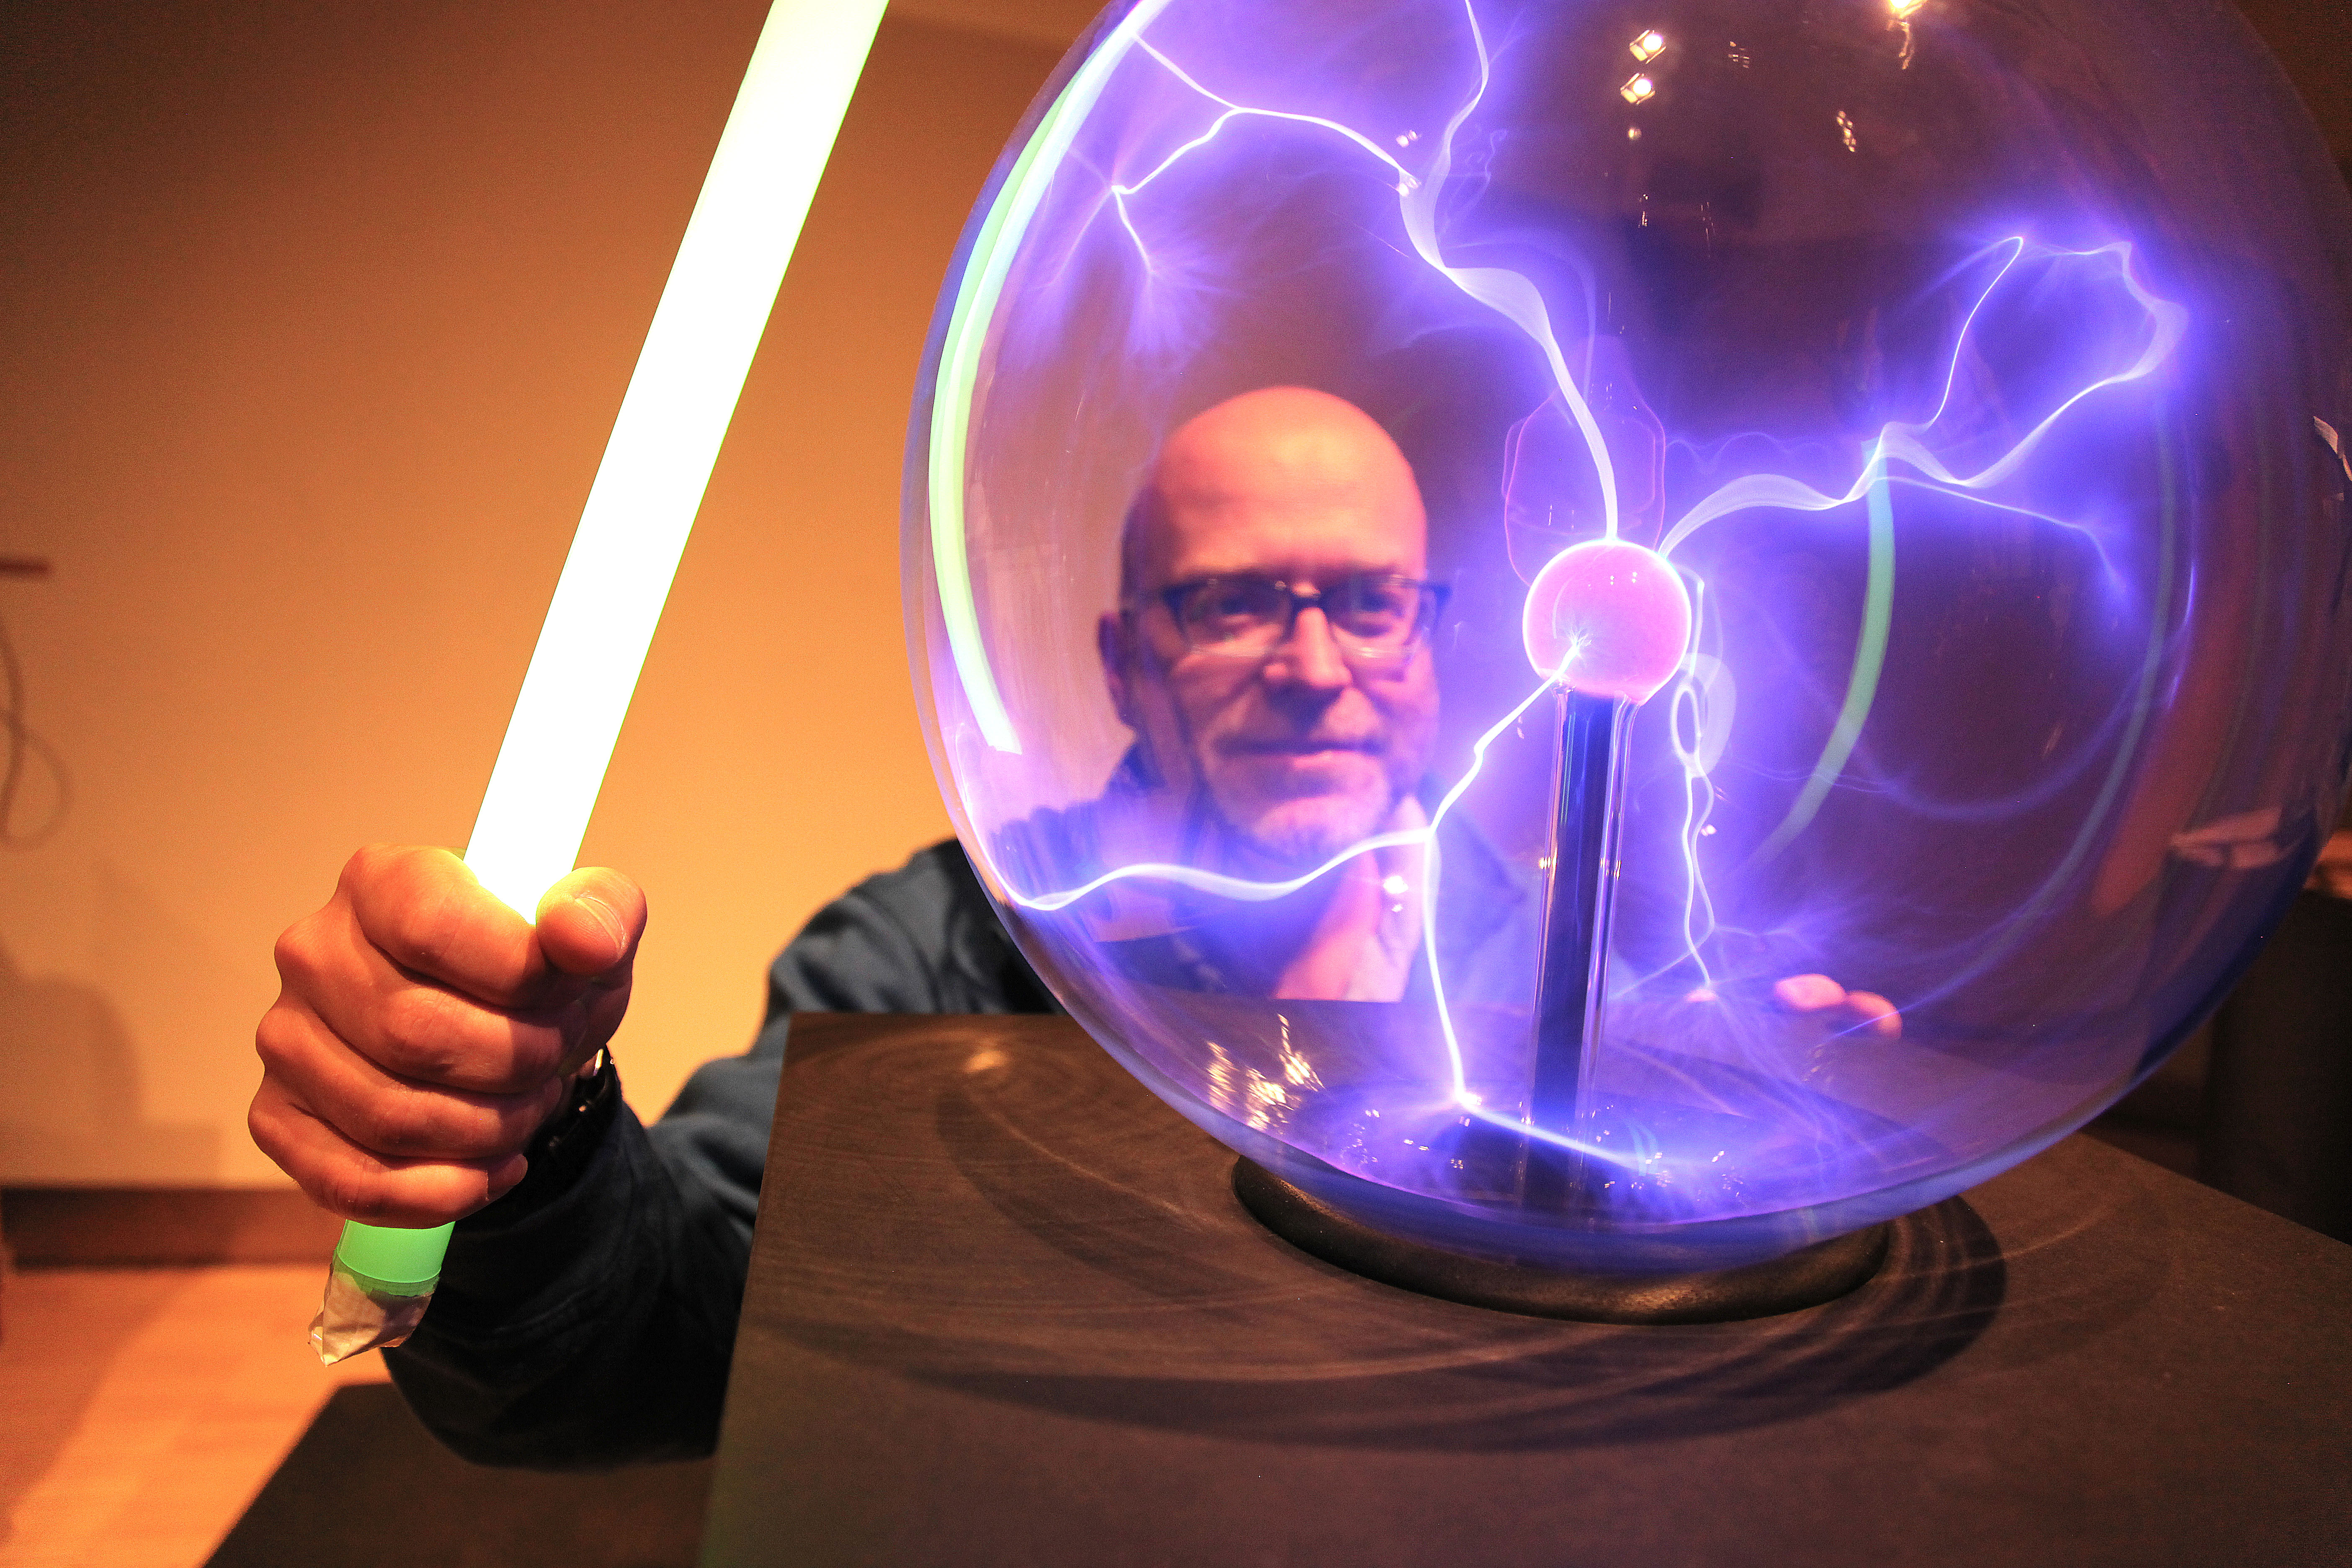 Das Bild zeigt einen Mann vor einer Plasmakugel. Die gläserne Kugel ist von der Mitte zum Rand mit kleinen, lilanen Blitzen durchzogen.